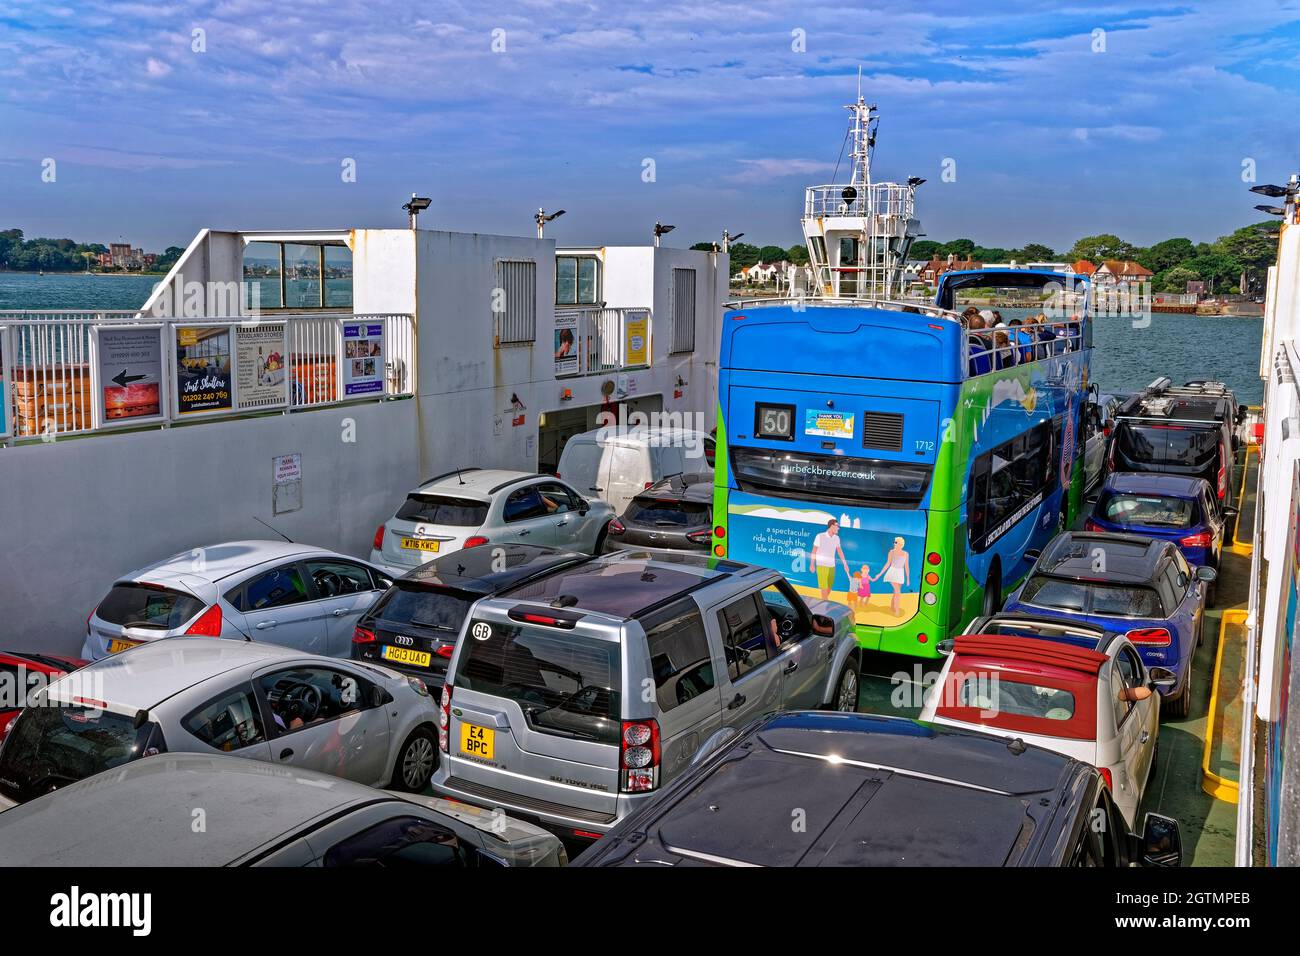 Le ferry de Sandbanks approche du terminal de Sandbanks à Sandbanks, Dorset, Angleterre. Banque D'Images